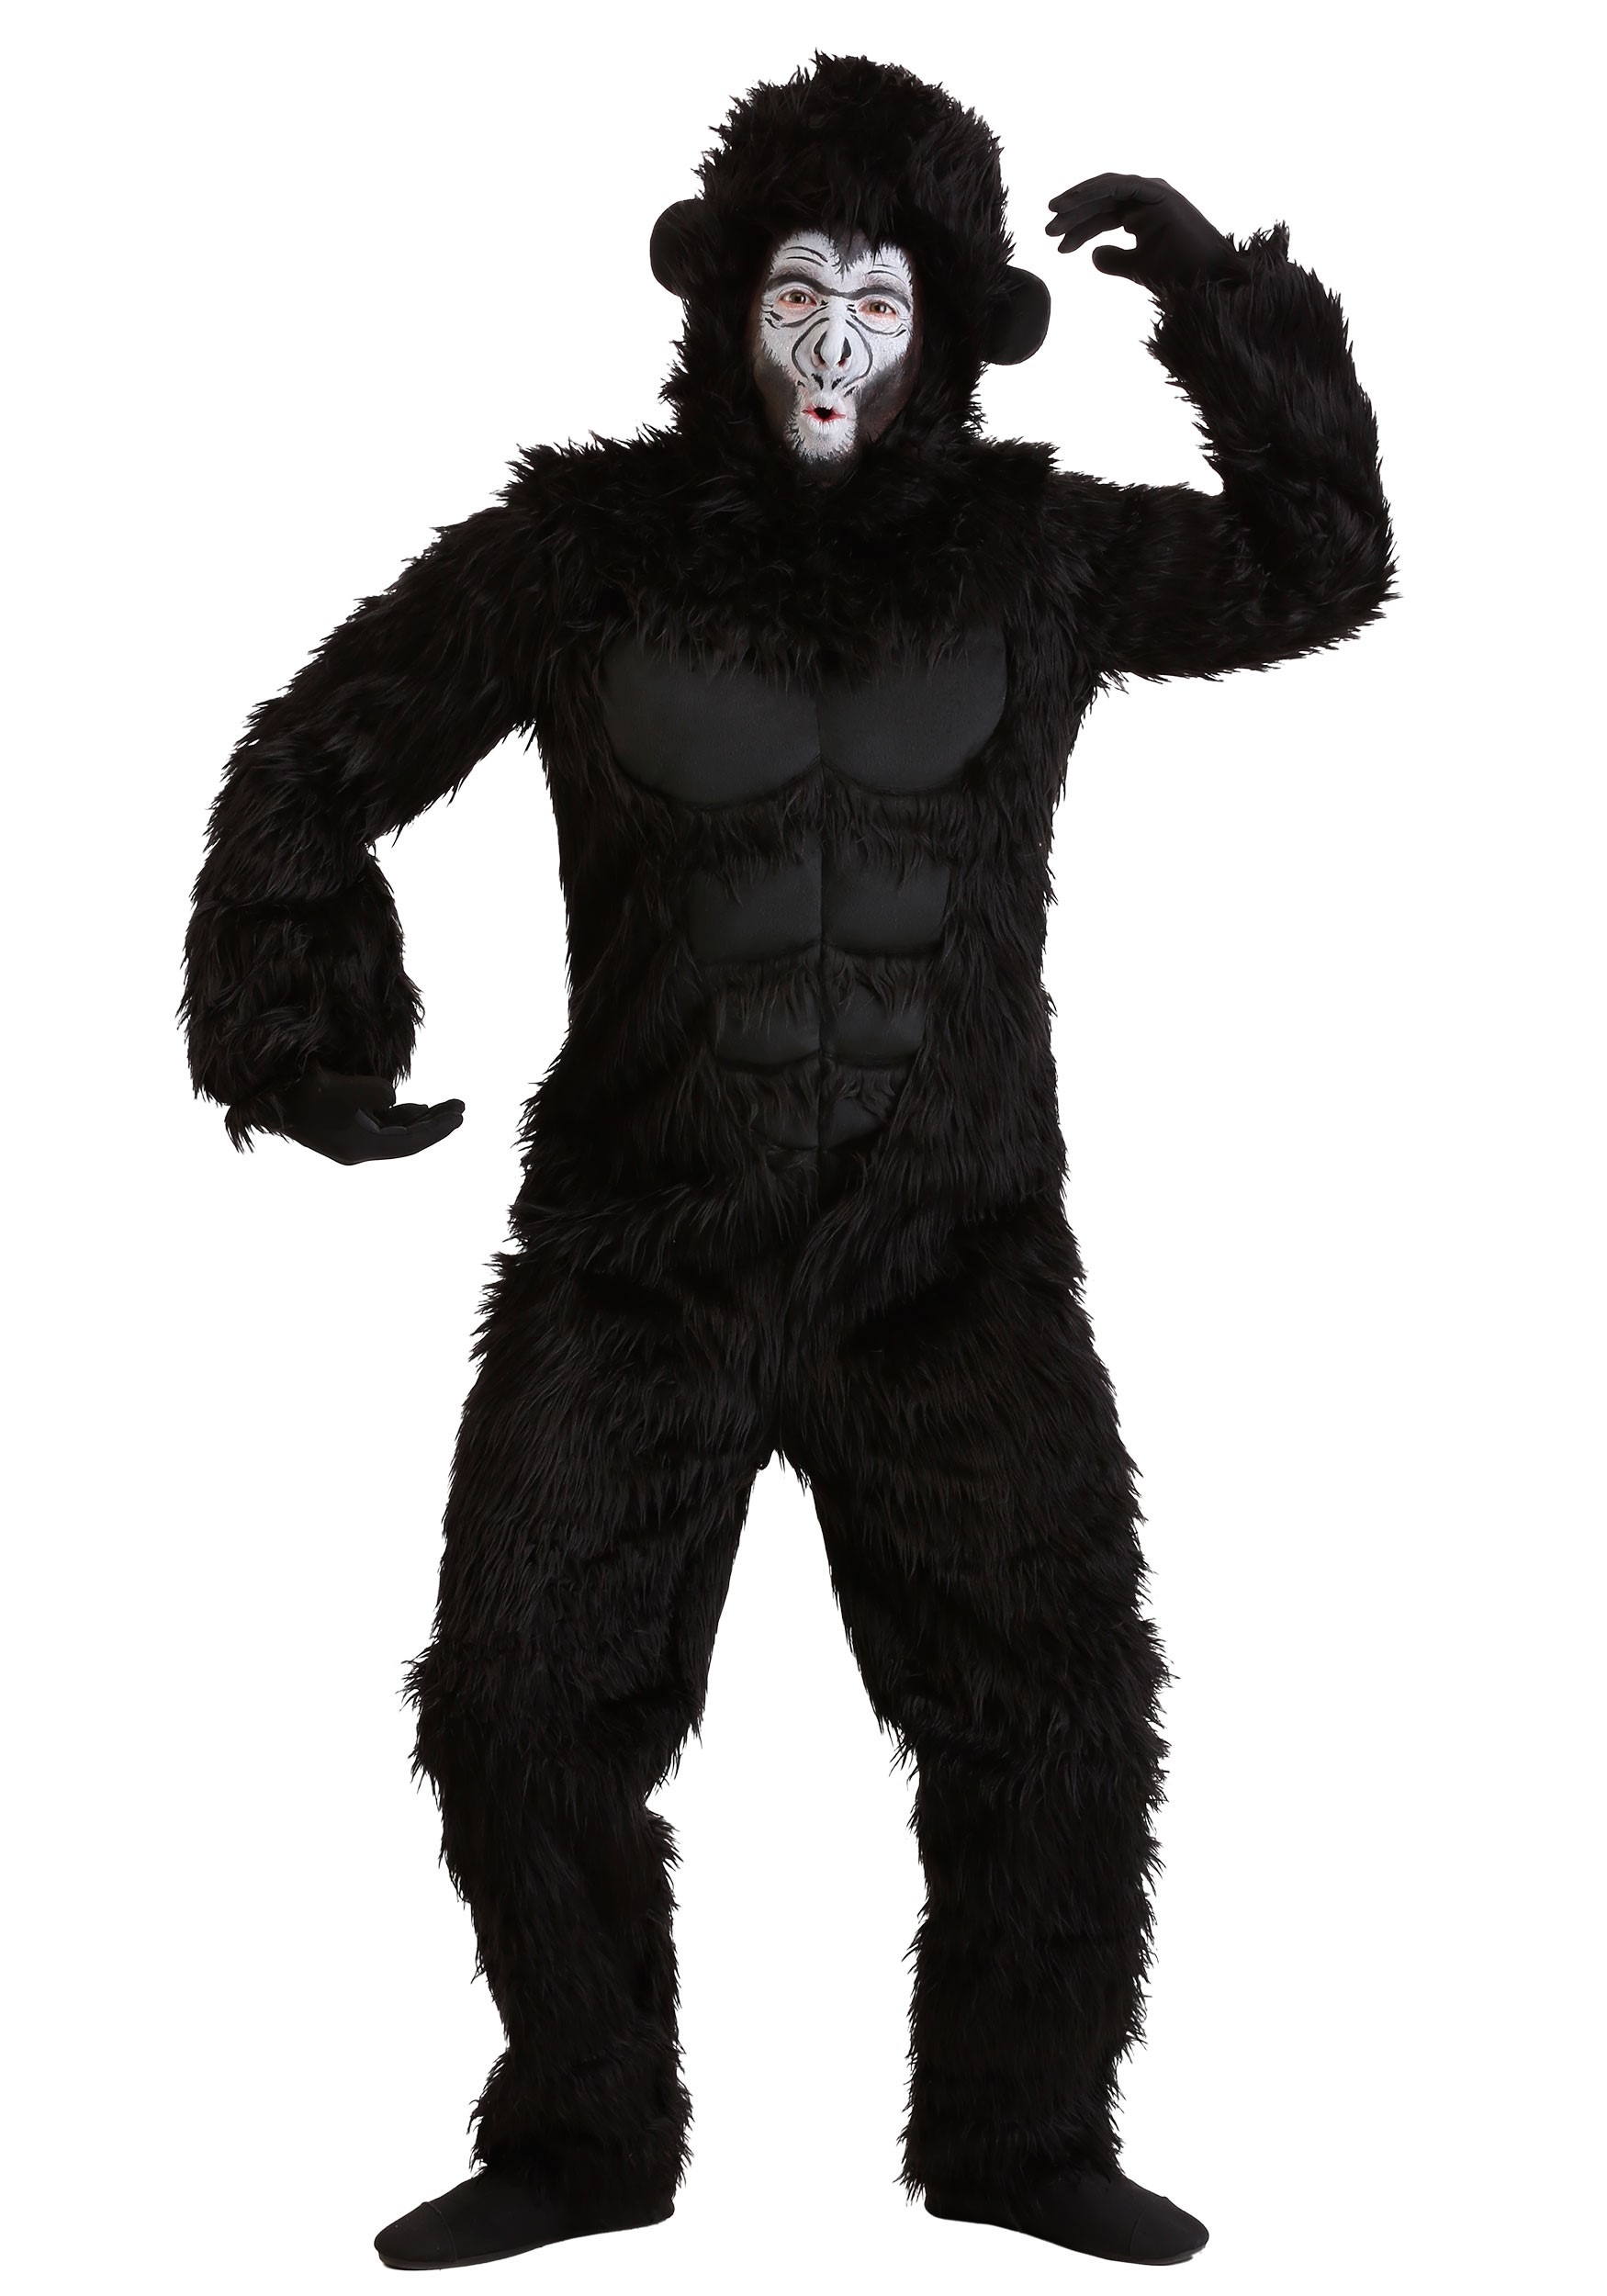 Customised Gorilla Suit Plus Furrymascot Suit Mascot Costume Costumes